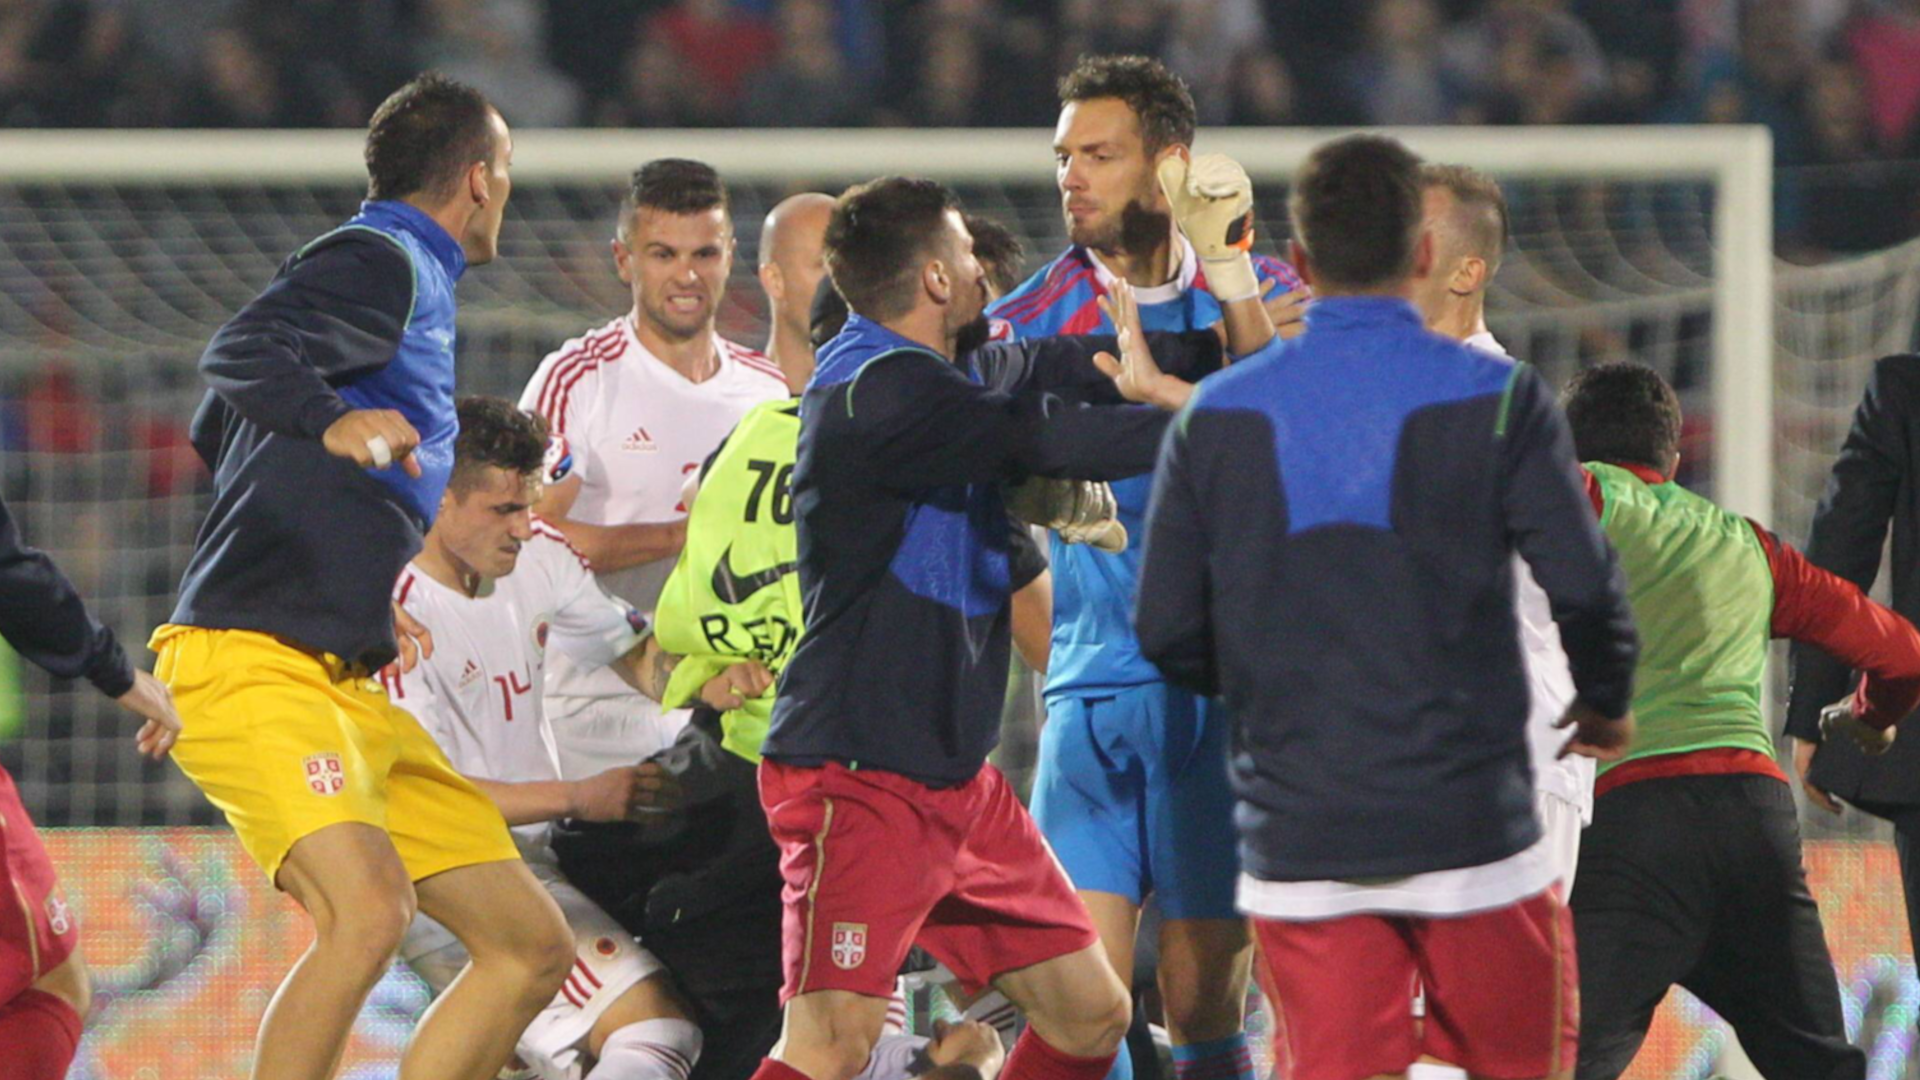 
                <strong>Albanien vs. Serbien EM-Qualifikation 2014</strong><br>
                Als in der 42. Minute im EM-Qualifikationsspiel zwischen Serbien und Albanien per Drohne eine großalbanische Flagge ins Stadion gelangte, eskalierte die Situation in Belgrad. Die Partie wurde kurz vor der Pause beim Stand von 0:0 zunächst nur unterbrochen. Der ehemalige Freiburger Stefan Mitrovic riss die Fahne an sich, woraufhin albanische Spieler auf ihn losgingen. Einige Zuschauer stürmten zudem den Innenraum und attackierten die Albaner, die sich Richtung Kabine retten wollten. Das Spiel wurde nicht wieder angepfiffen. Nach einem Urteil das CAS wurde die Partie mit 3:0 für Albanien gewertet. 
              